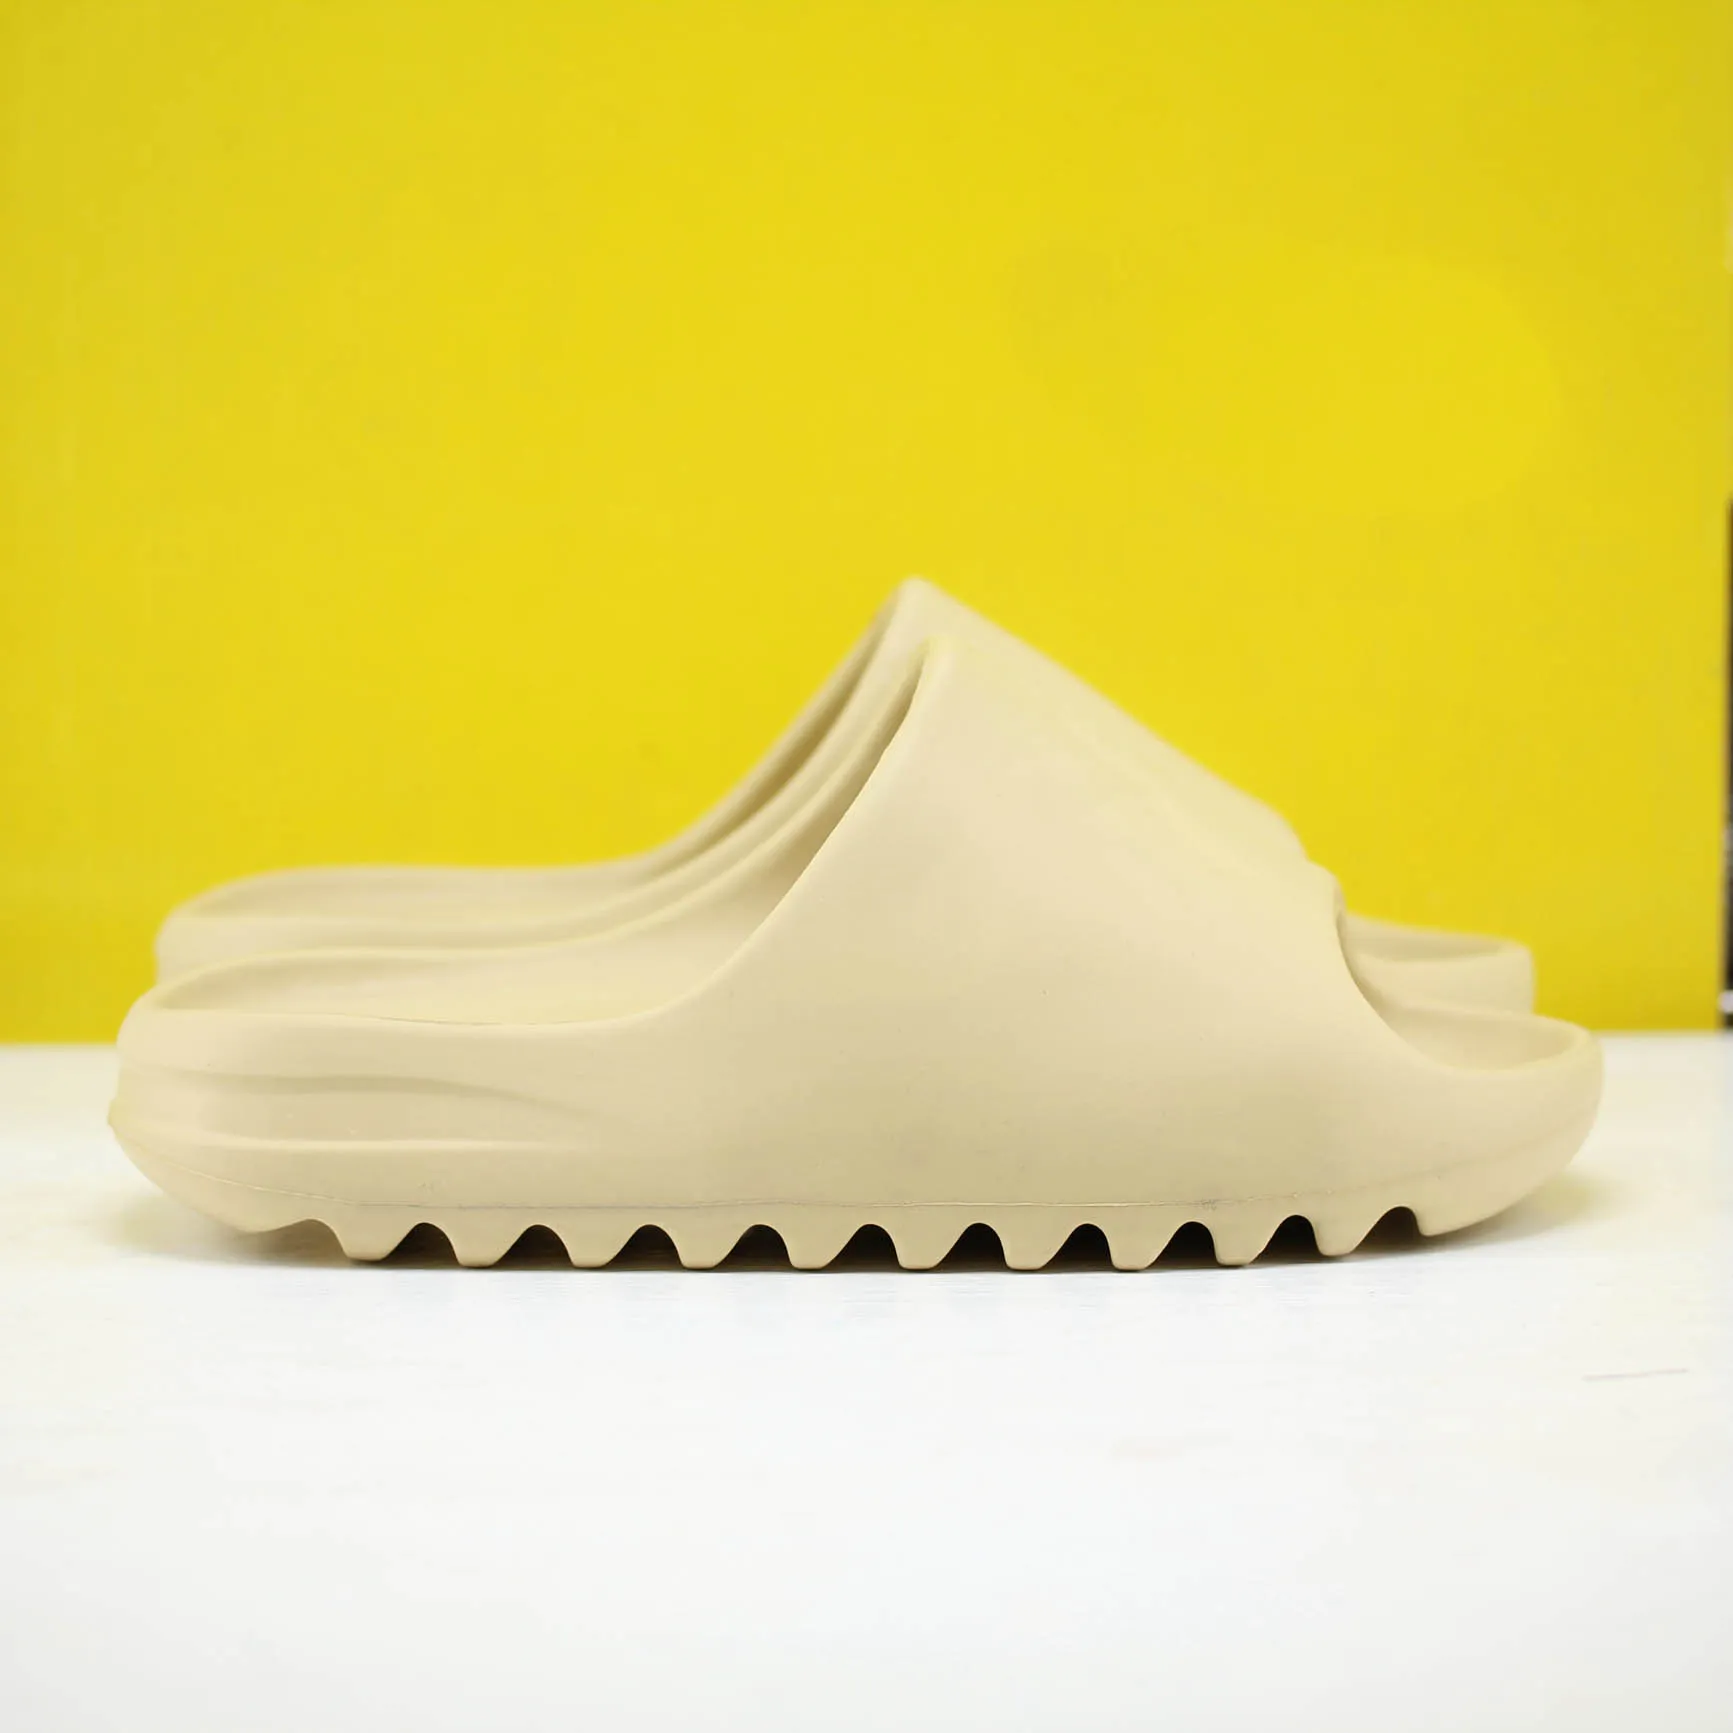 2021 Hombres Flip Flops Playa Mar Zapatillas Zapatos de diseñador Diapositivas Moda de verano Ancho Plano Resbaladizo Sandalias gruesas Zapatilla con caja de calidad superior